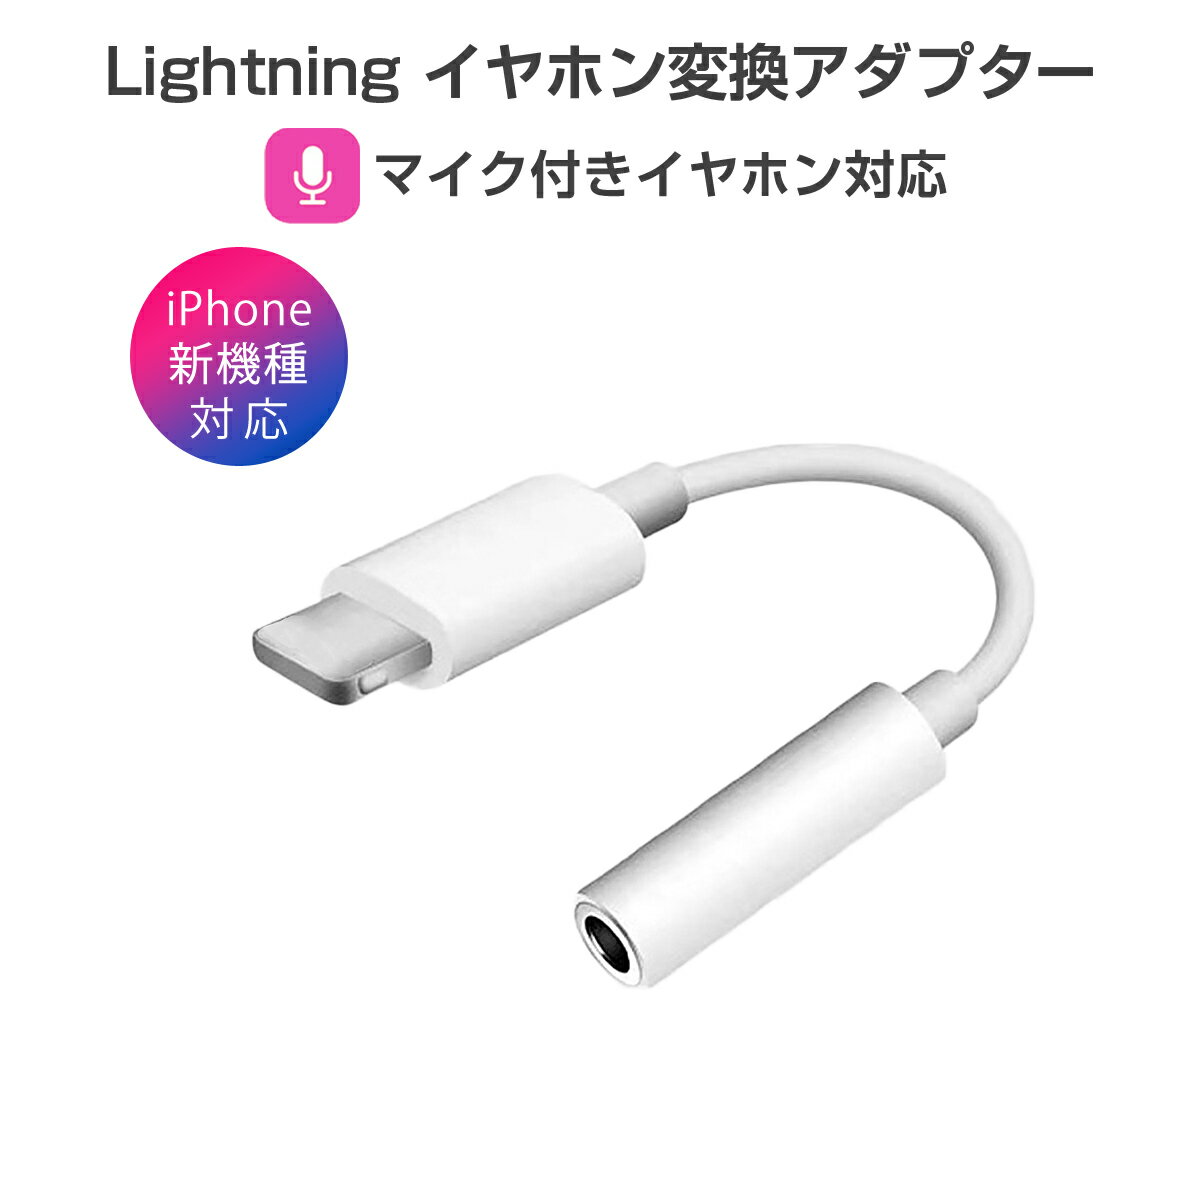 卸売B2B iPhone イヤホン 変換アダプタ ライトニング lightning ケーブル ジャック 3.5mm ヘッドホン iPhone iPad iPod 最新ios対応 1ヶ月保証